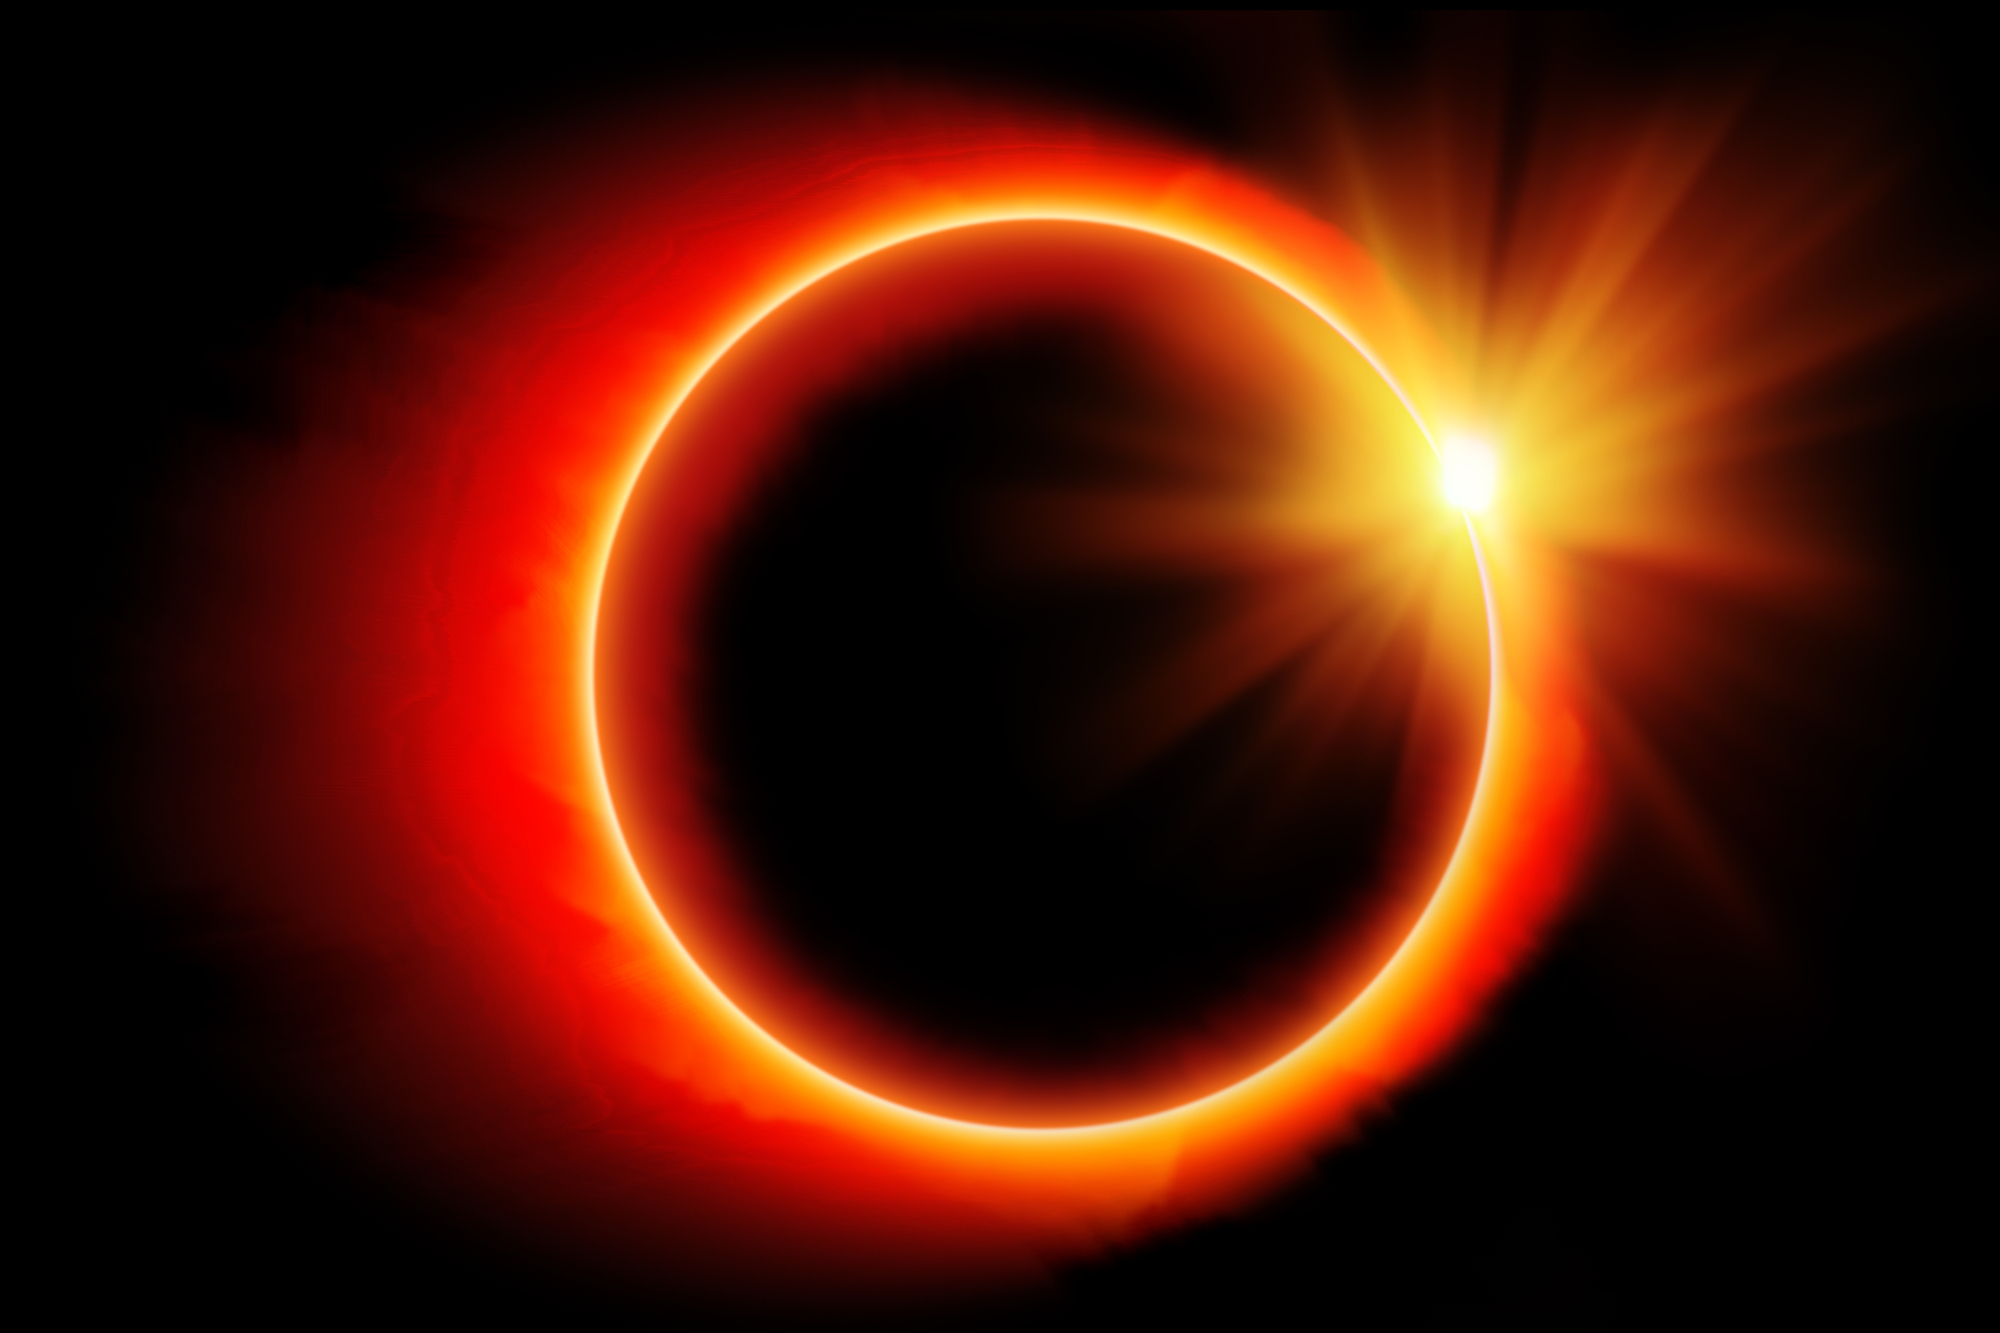 México verá dos eclipses solares en 2023 y 2024.